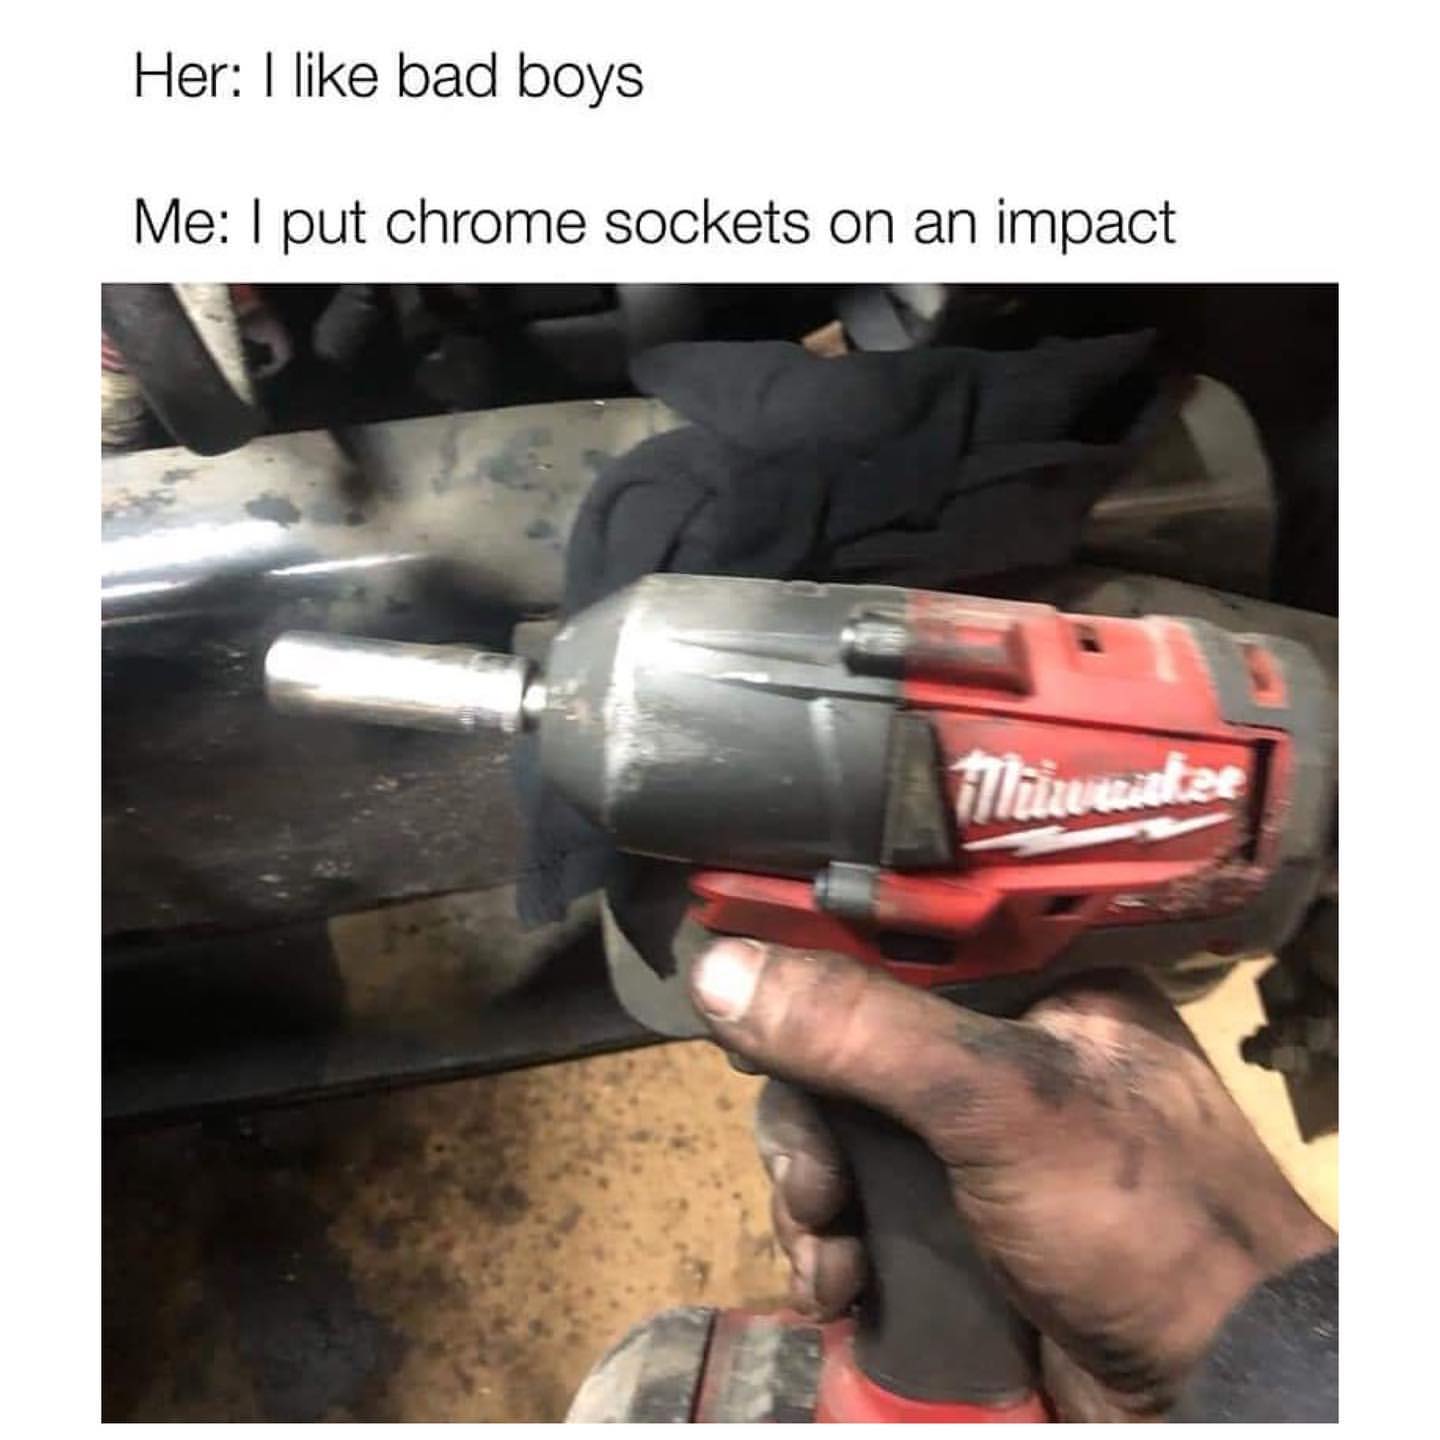 Her: I like bad boys. Me: I put chrome sockets on an impact.